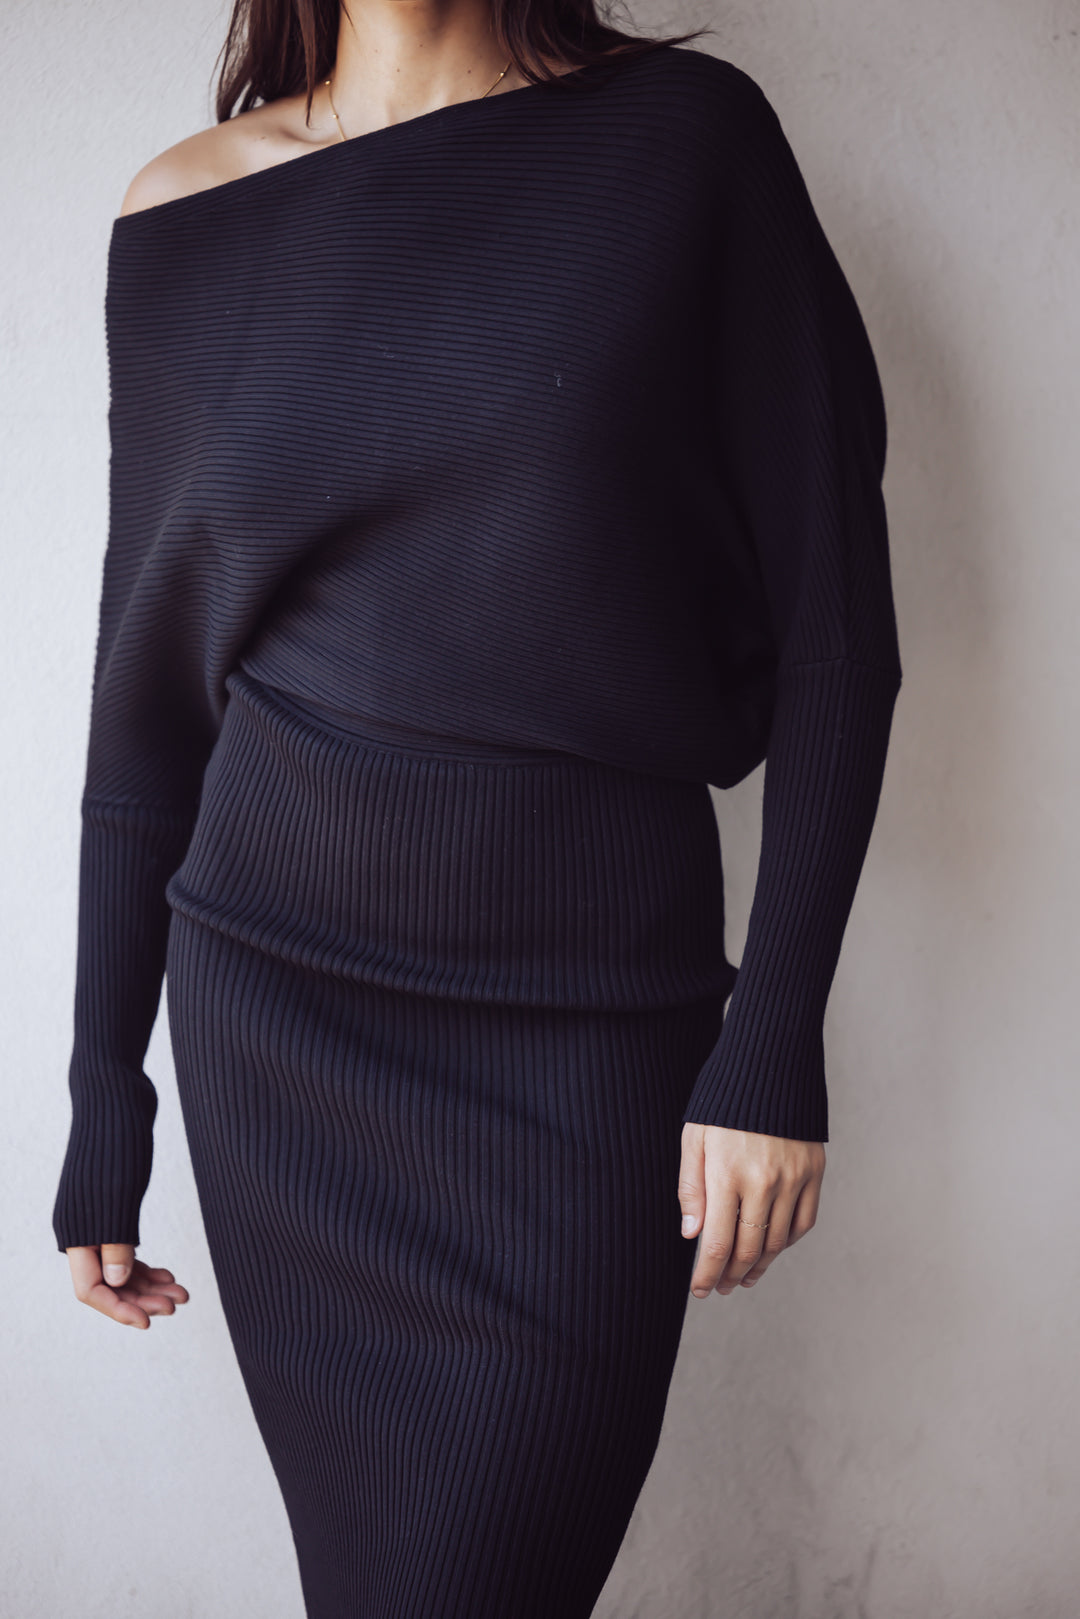 Steve Madden Lori Sweater Midi Dress - Black